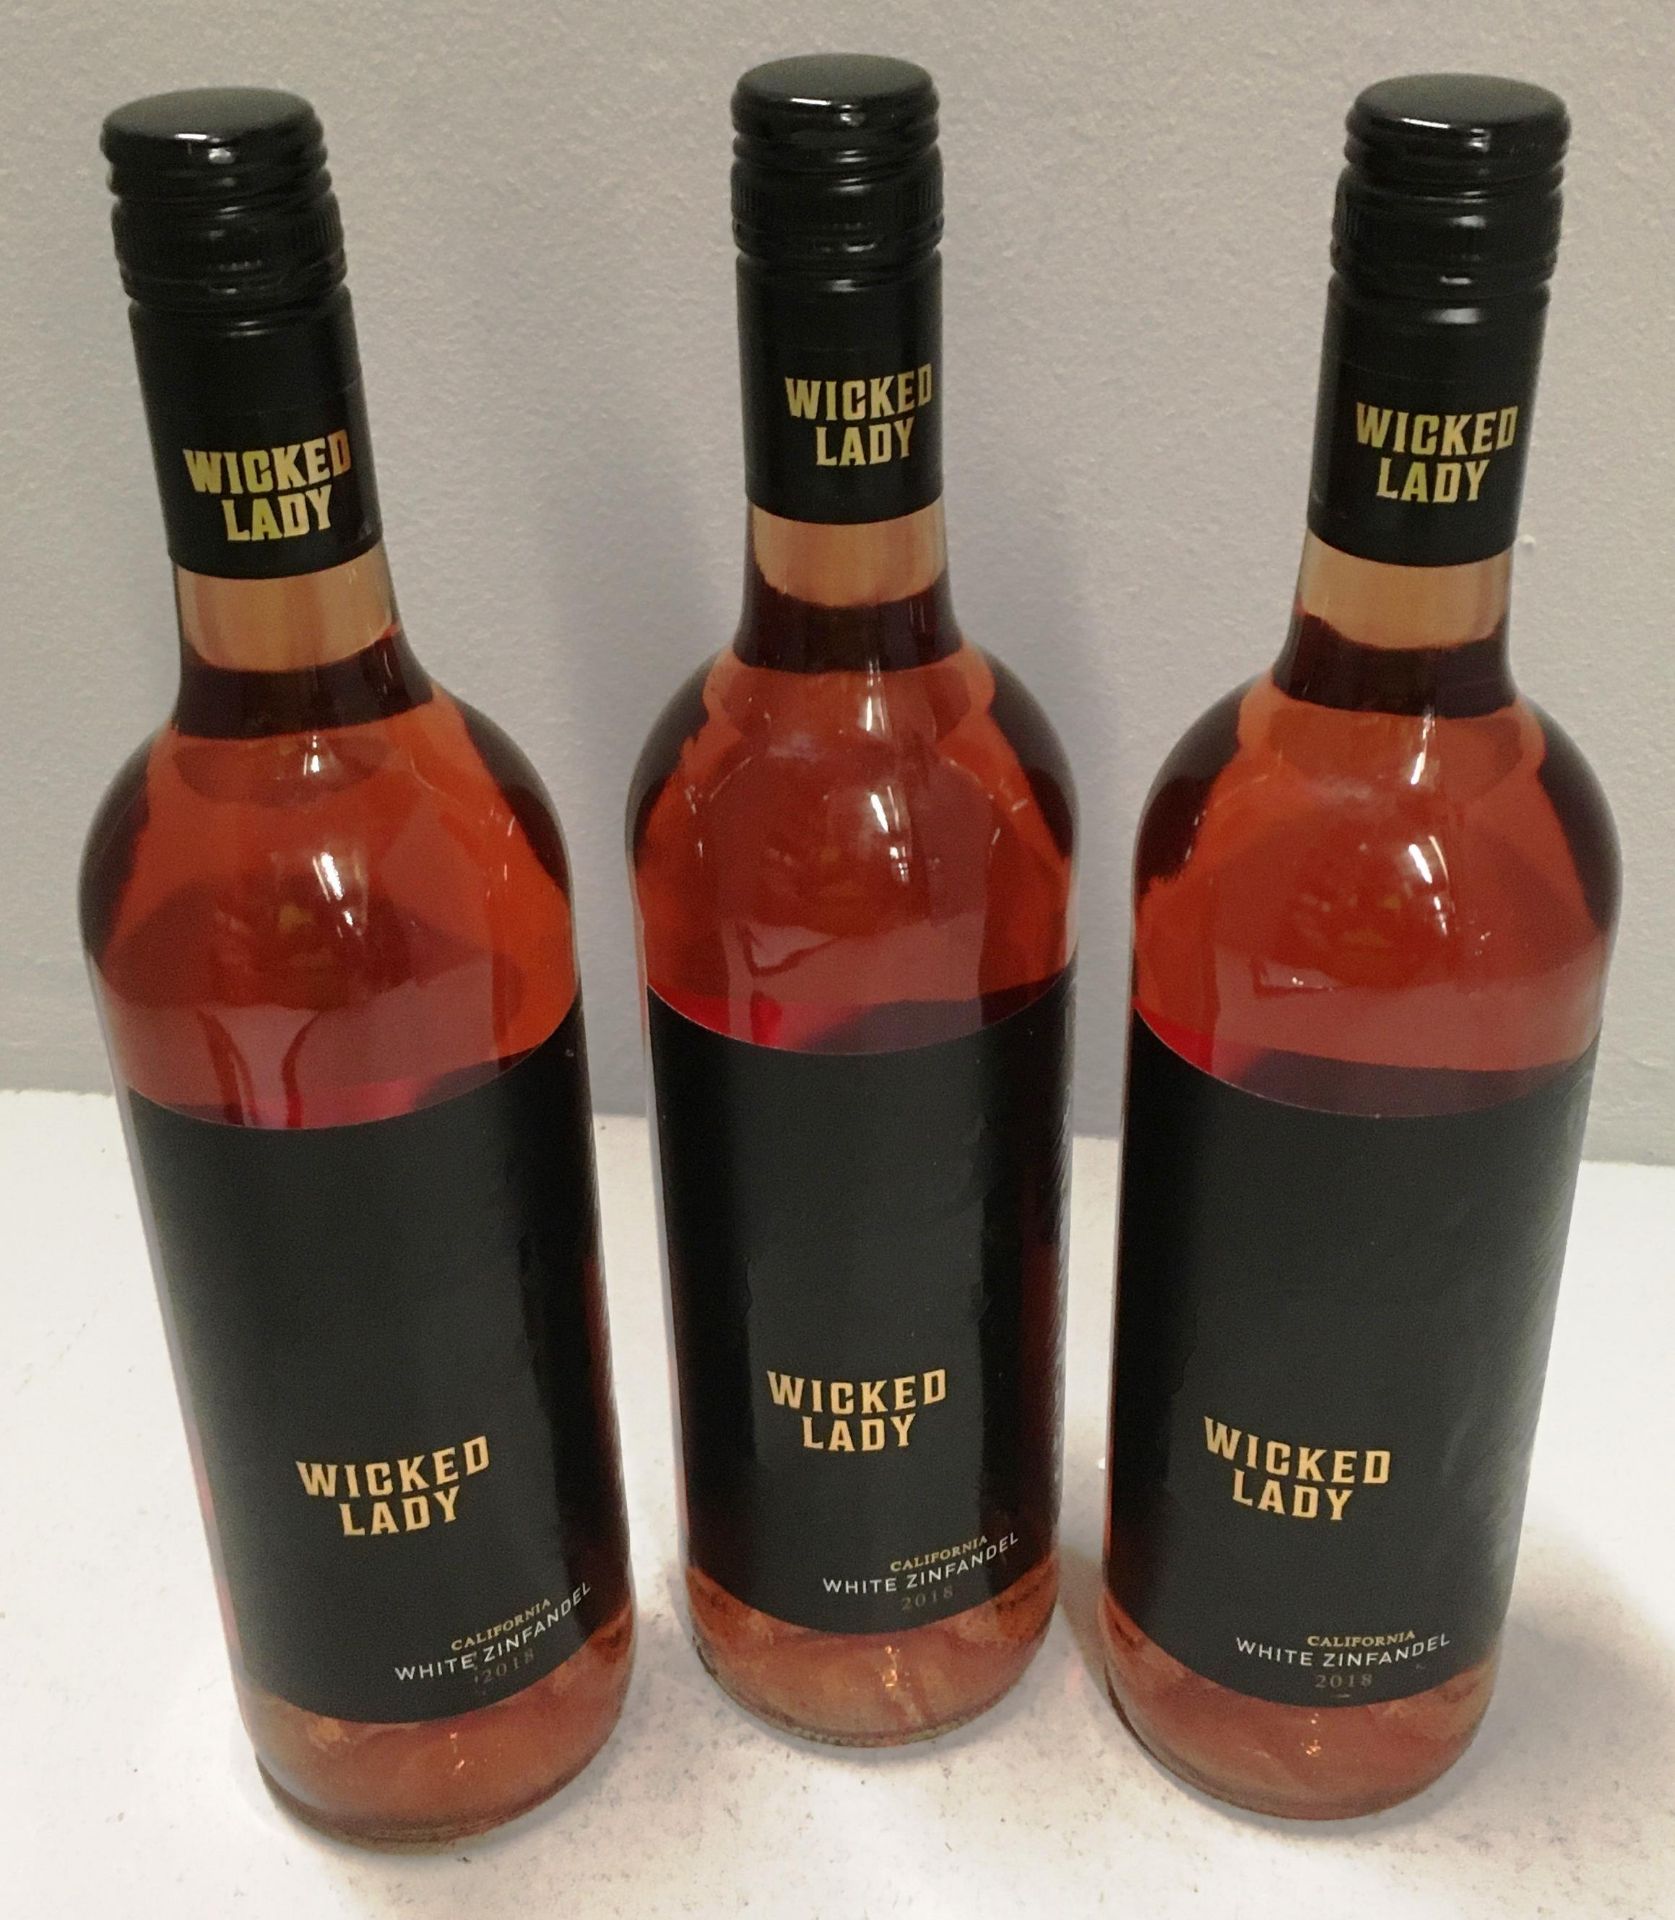 6 x 750ml bottles of Wicked Lady Californian White Zinfandel 2018 rose wine